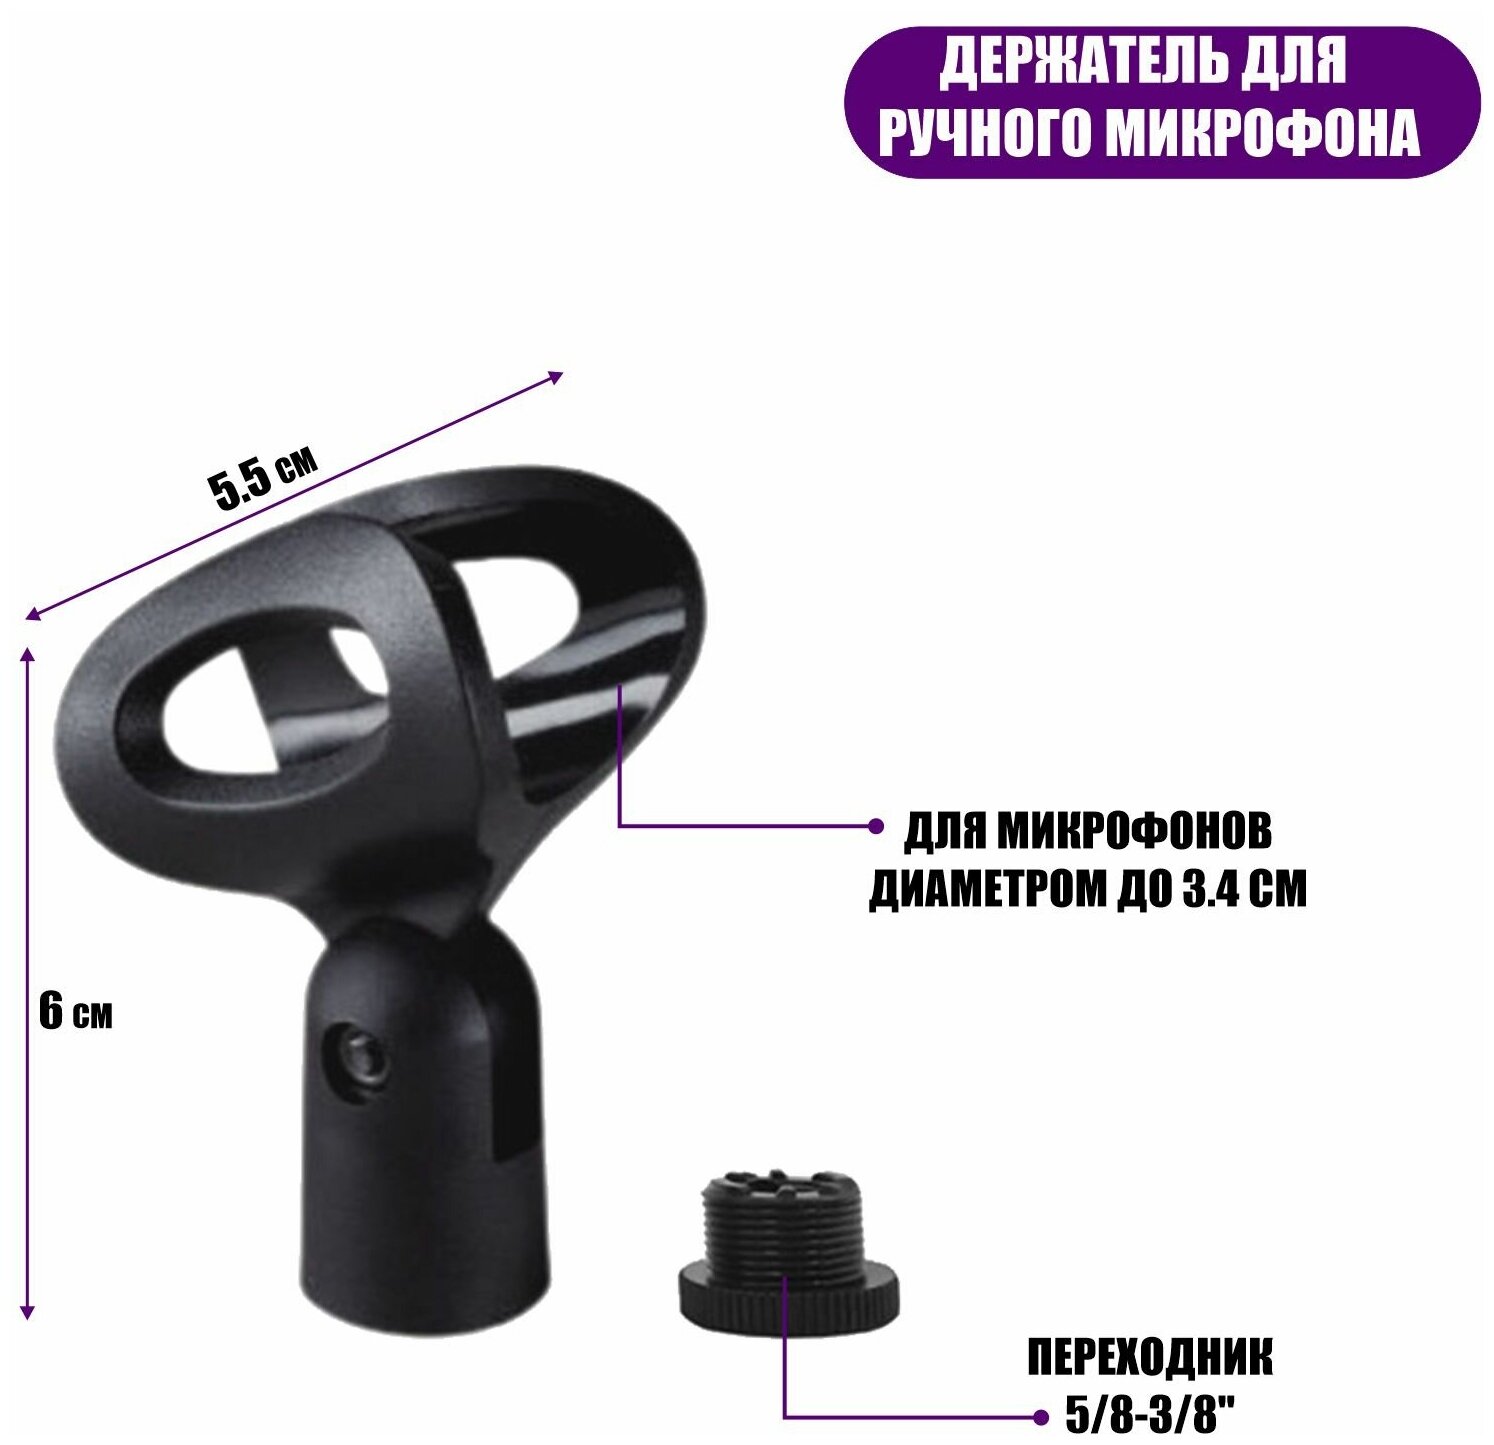 Напольная стойка журавль JBPro-35DT для микрофона c держателем для телефона на короткой основе